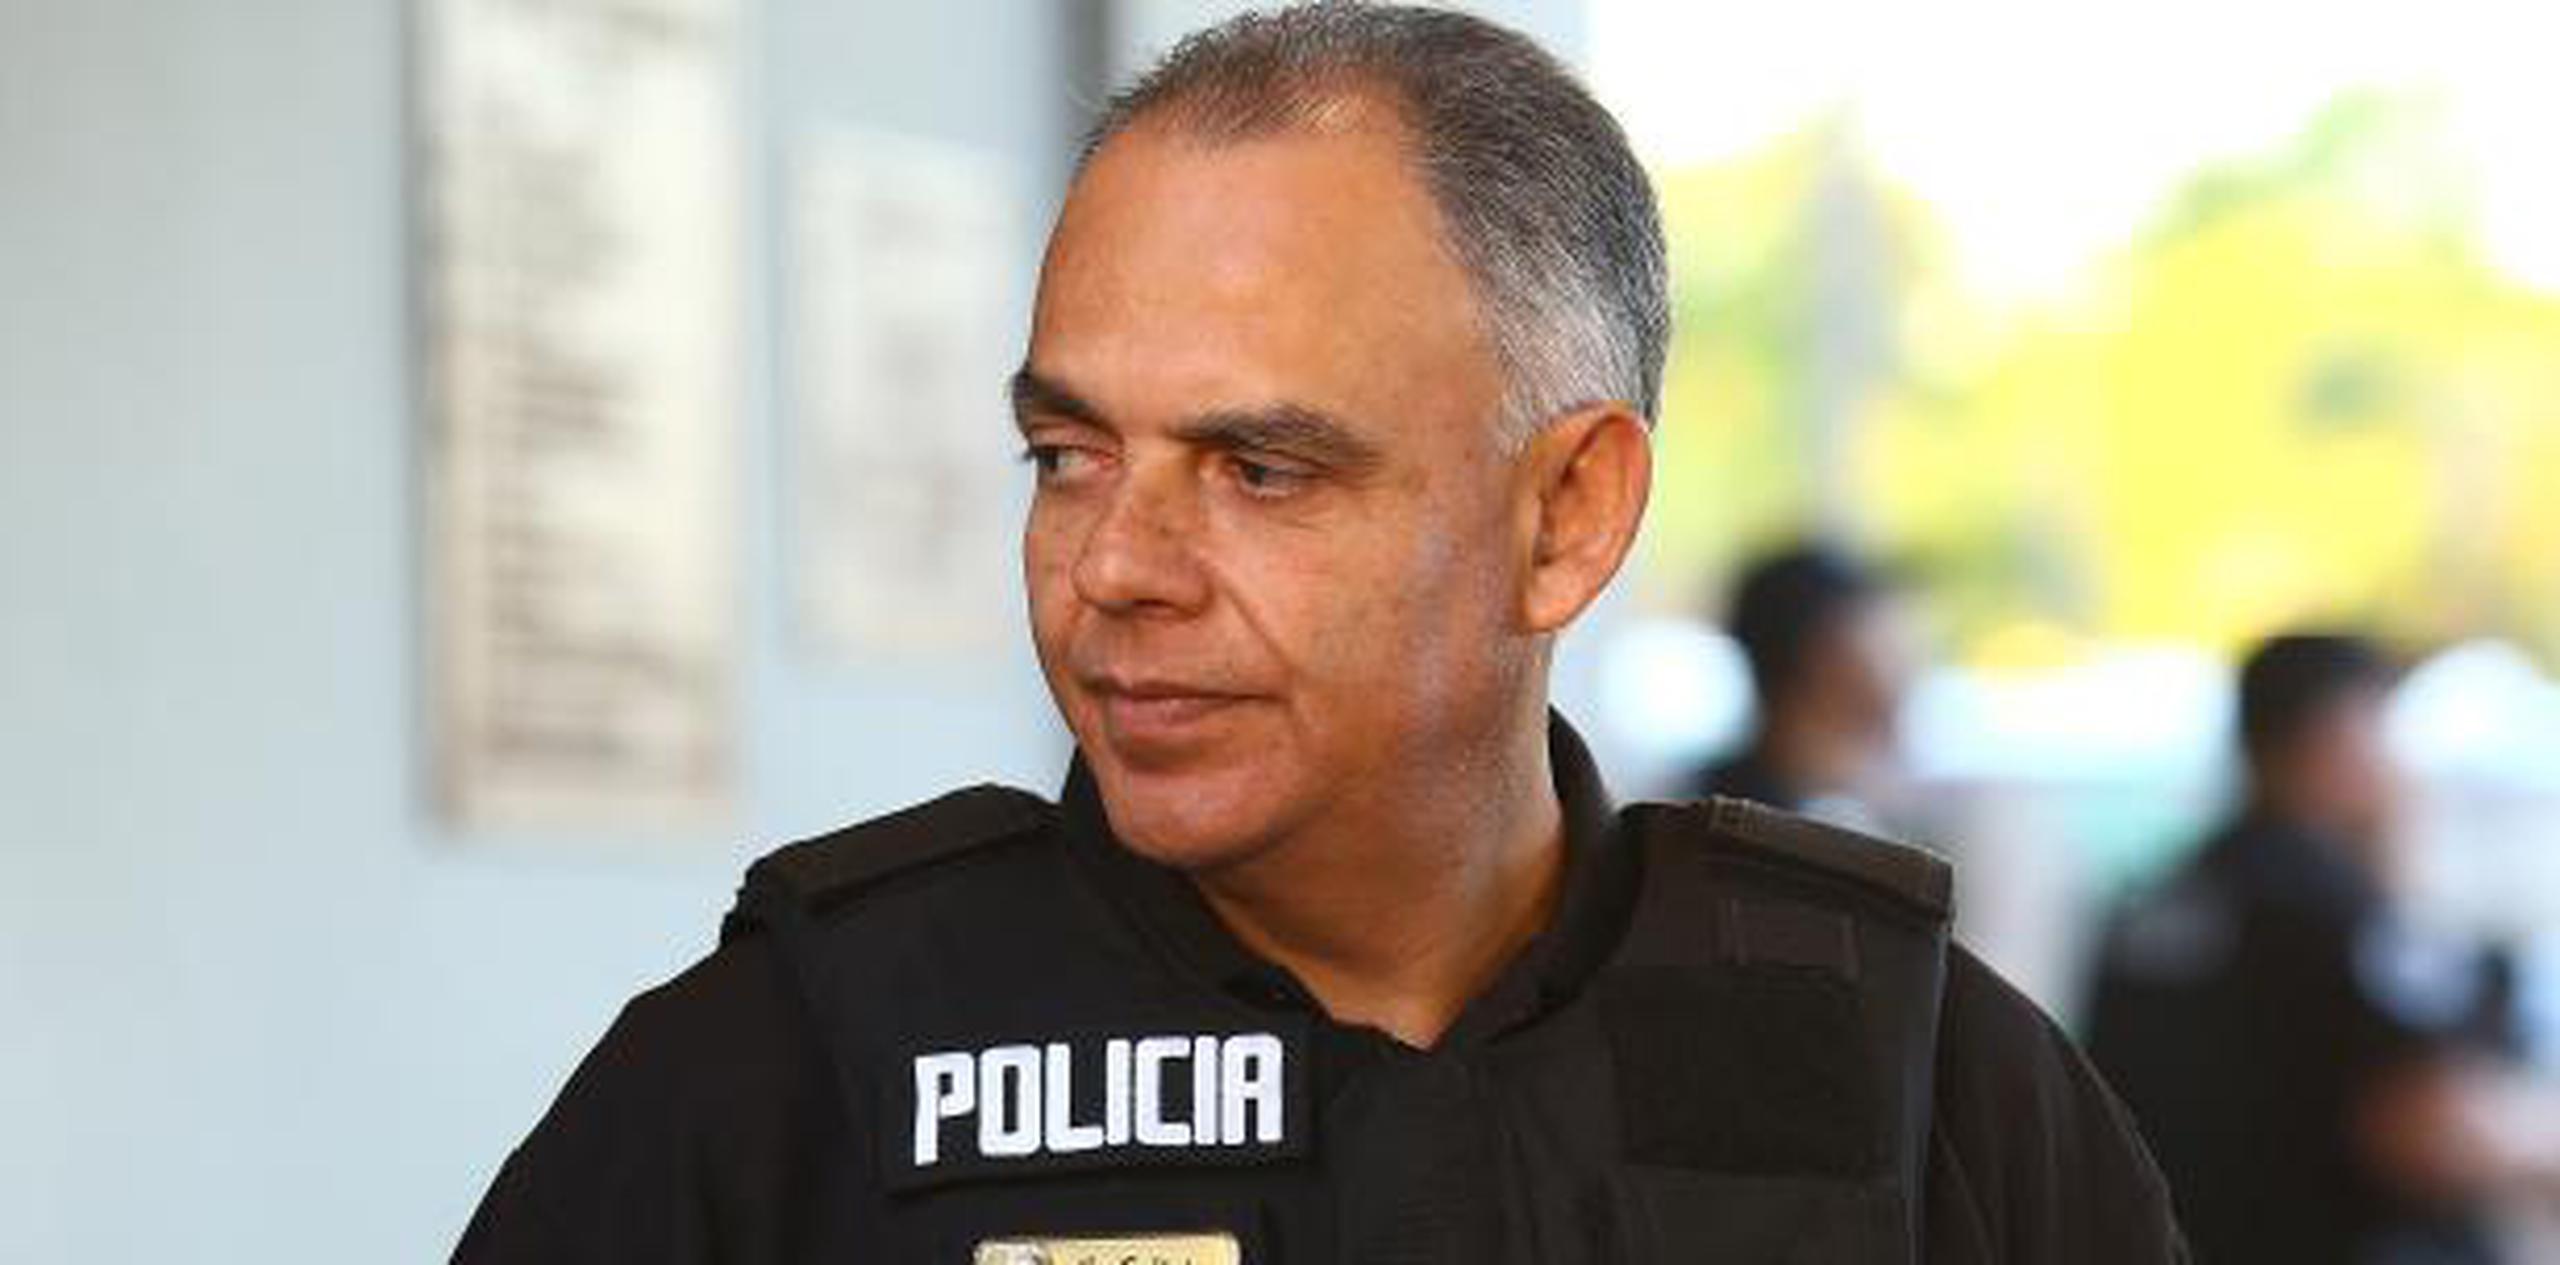 De manera irregular, Calixto Rodríguez, en vez de ser citado a la División de Agresiones del Cuerpo de Investigación Criminal (CIC) de San Juan como corresponde, compareció a la División de Vehículos Hurtados. (Archivo)